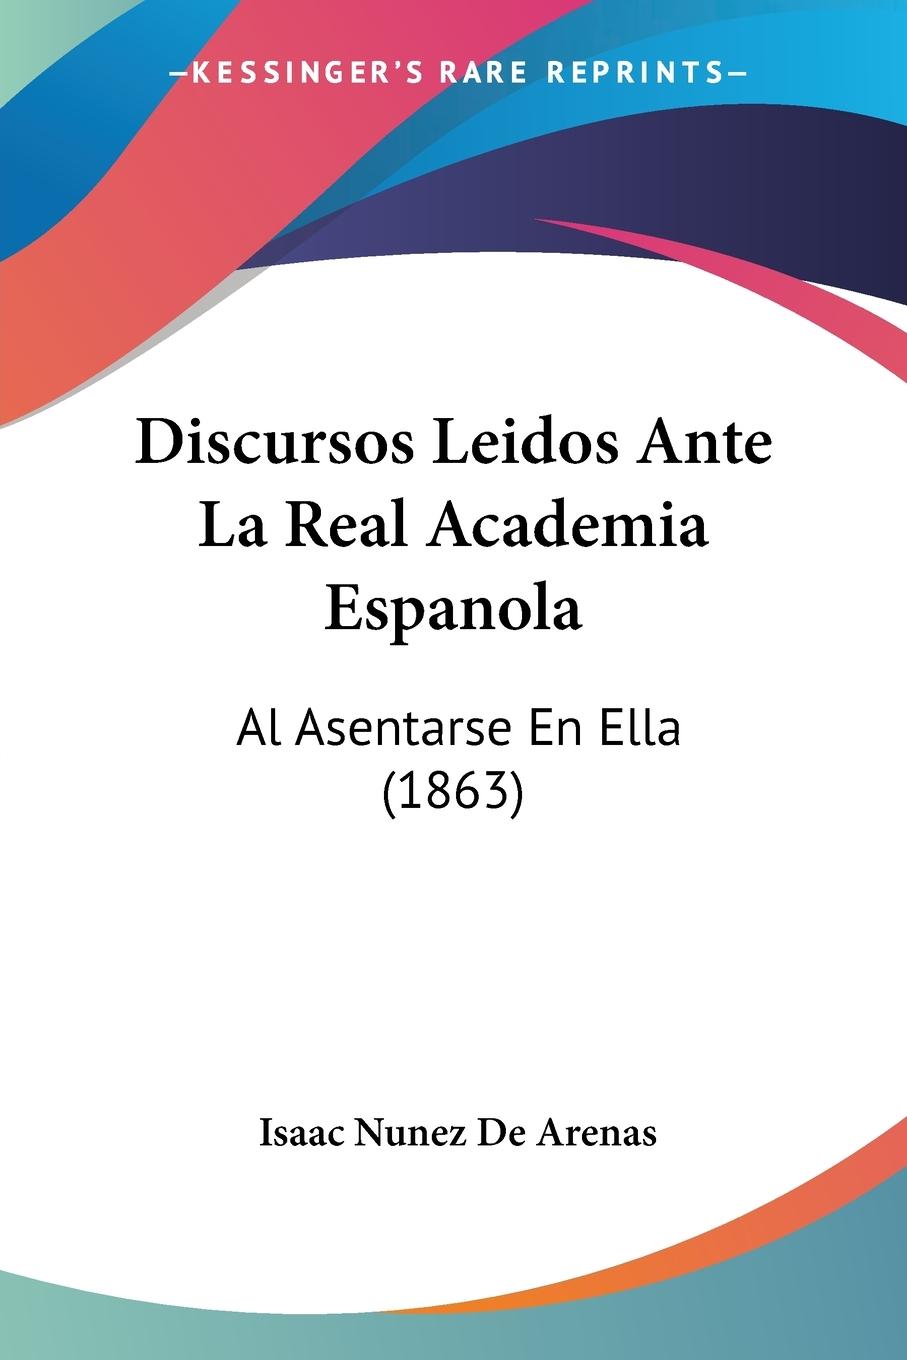 Discursos Leidos Ante La Real Academia Espanola - De Arenas, Isaac Nunez